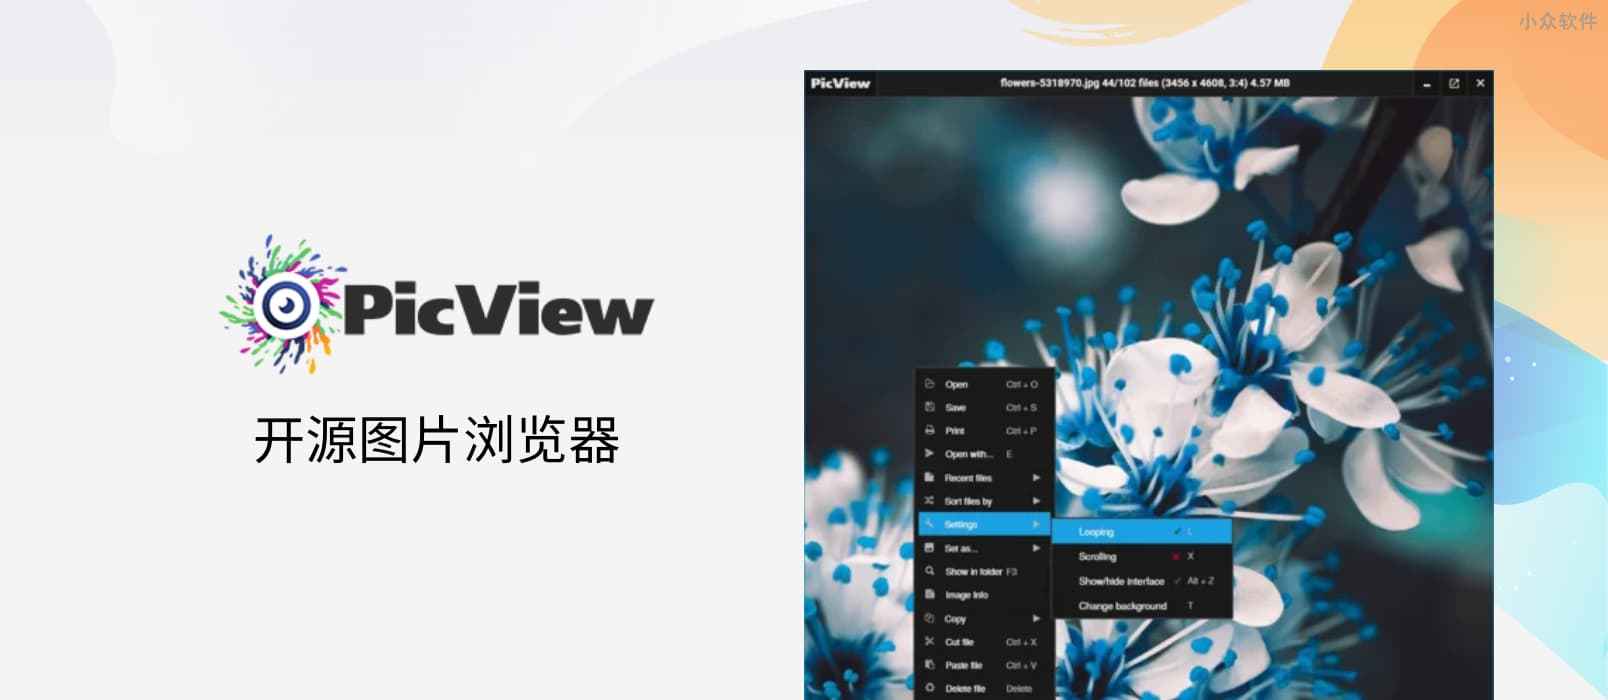 PicView - 开源图片浏览器，可查看压缩包图片，快速、“小巧”[Windows] 1